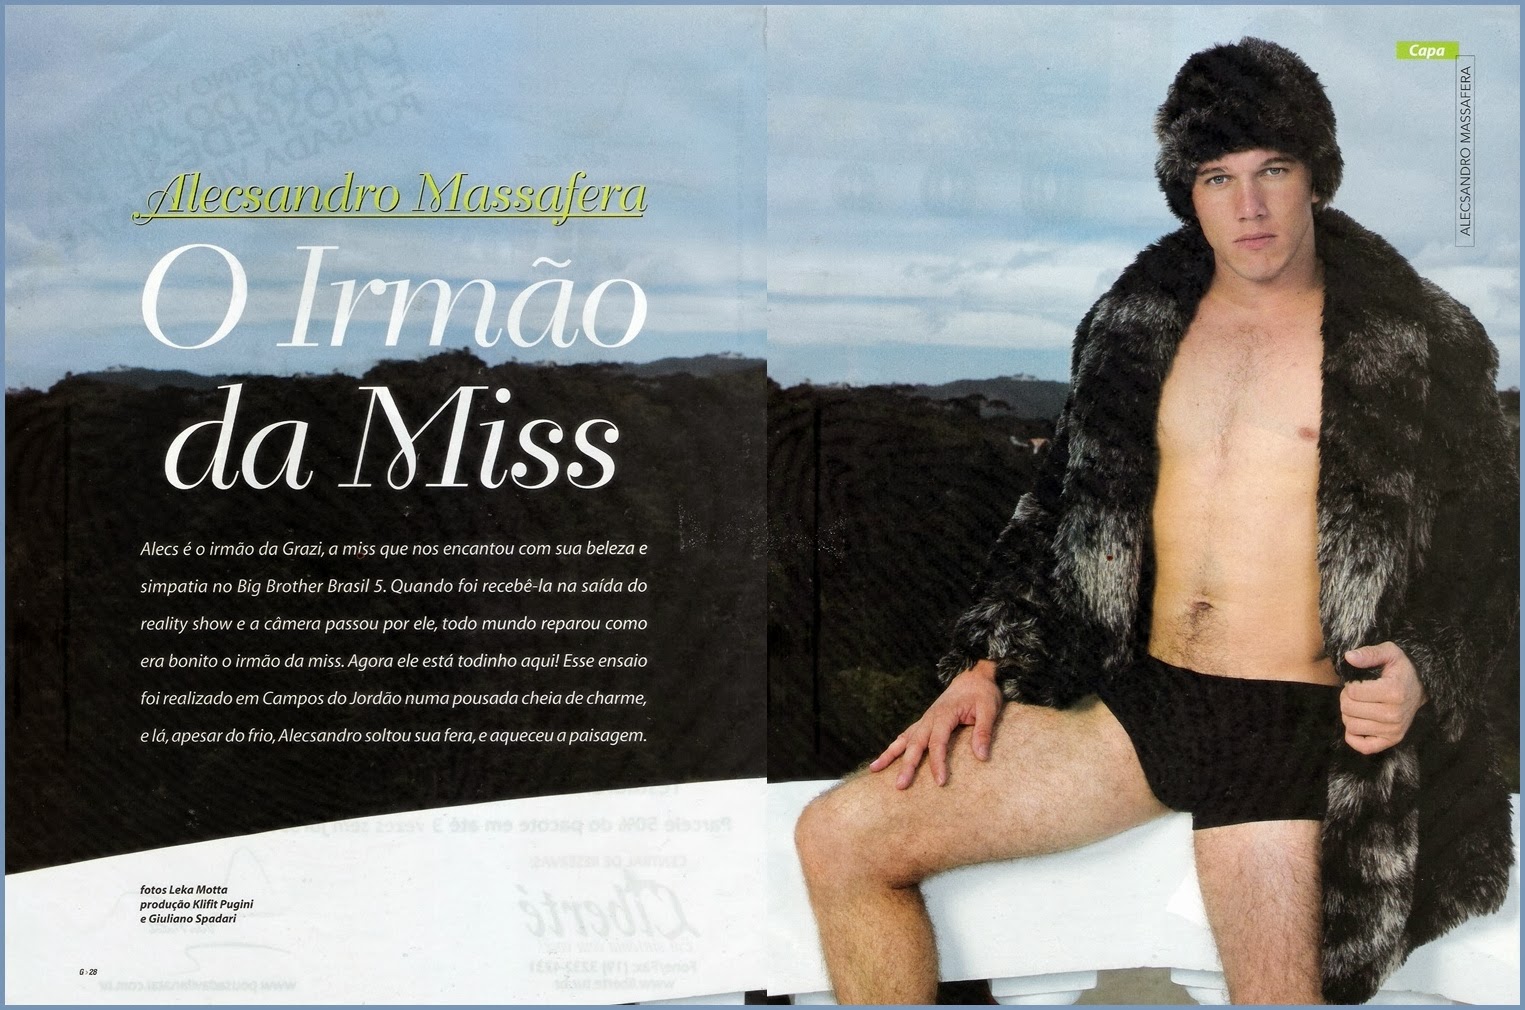 Fotos de Alecsandro Massafera pelado na revista G Magazine